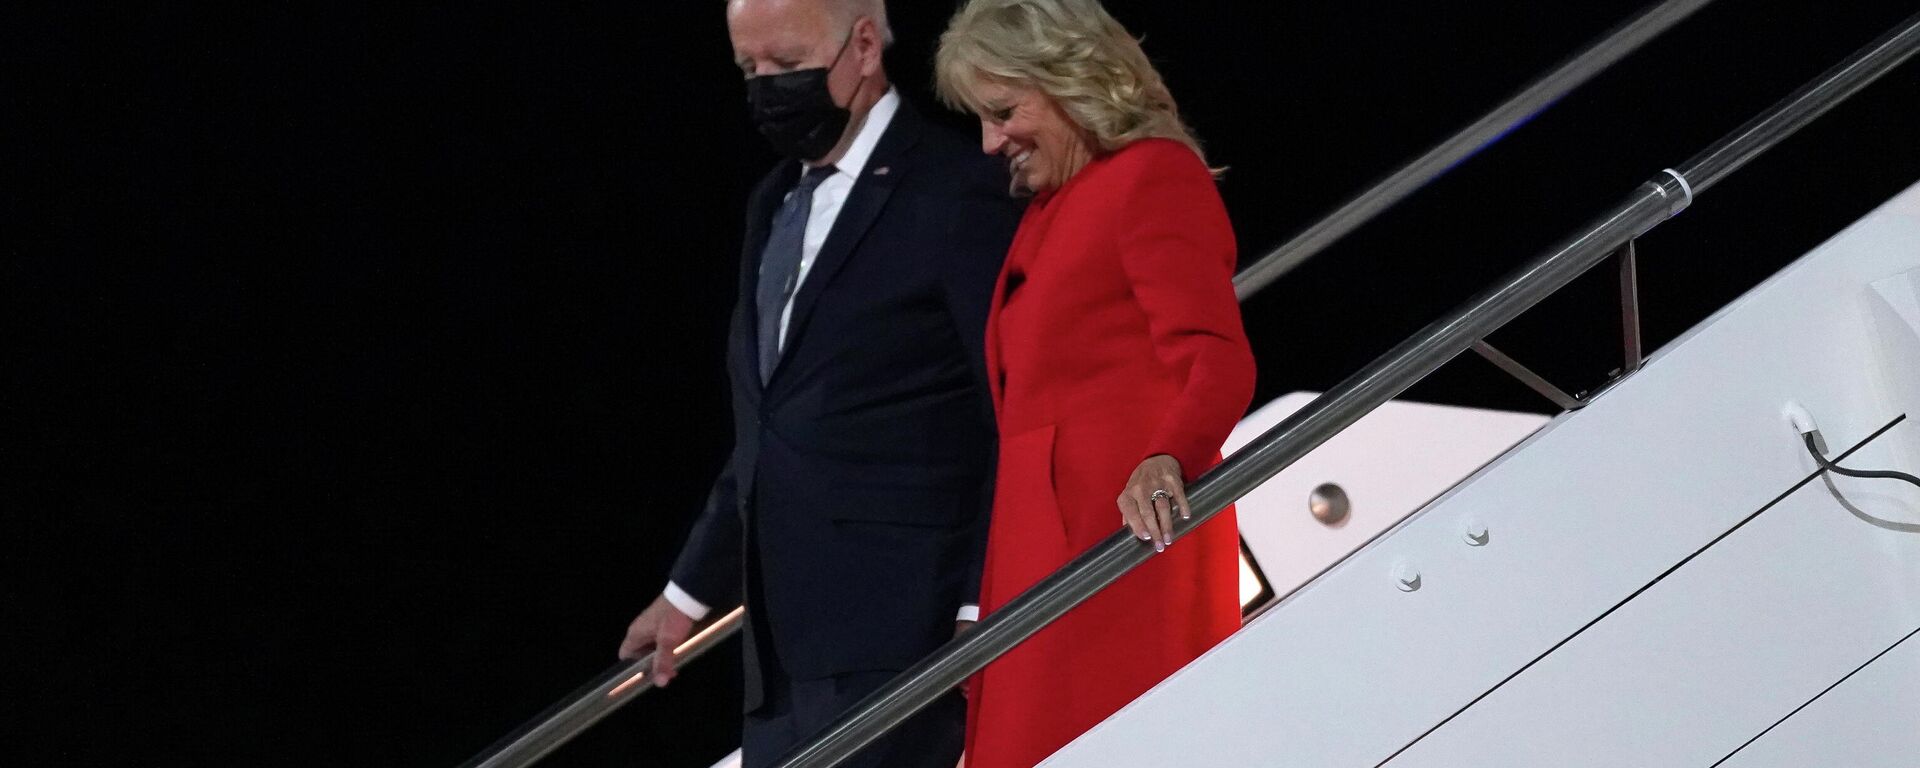 El presidente de EEUU, Joe Biden, y su esposa, Jill Biden, llegaron a Roma para la cumbre del G20 - Sputnik Mundo, 1920, 29.10.2021